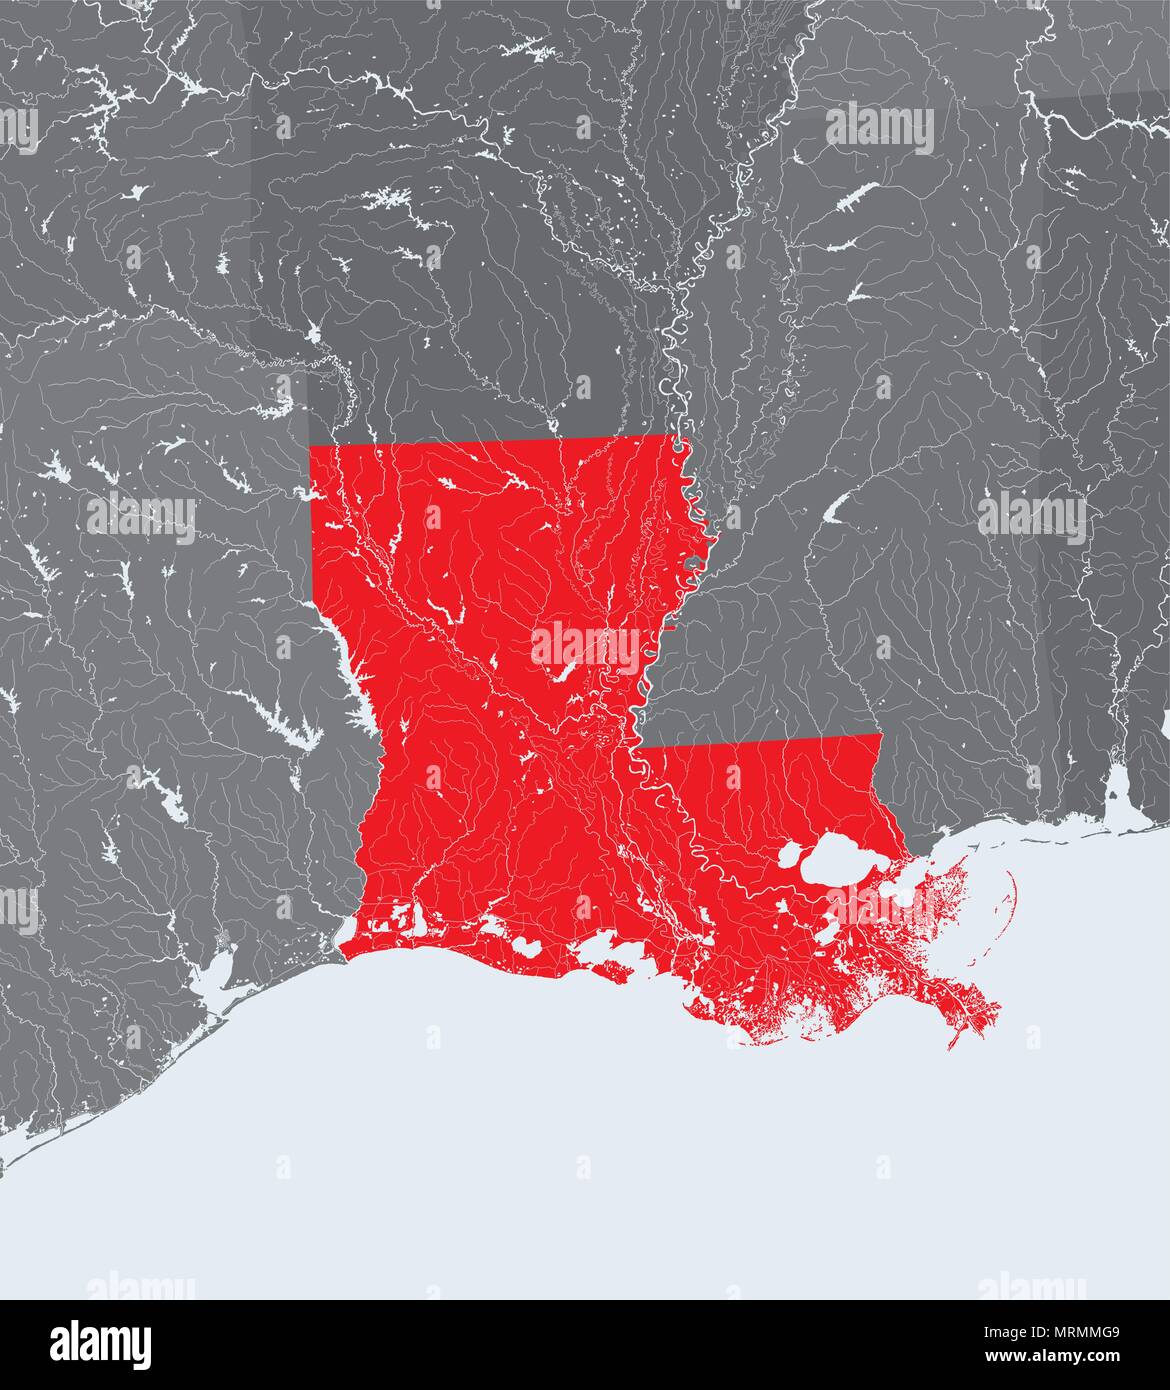 Estados Unidos - mapa de Louisiana. Hecho a mano. Los ríos y lagos son mostradas. Por favor mire mis otras imágenes de la serie cartográfica - todos ellos son muy precisos Ilustración del Vector